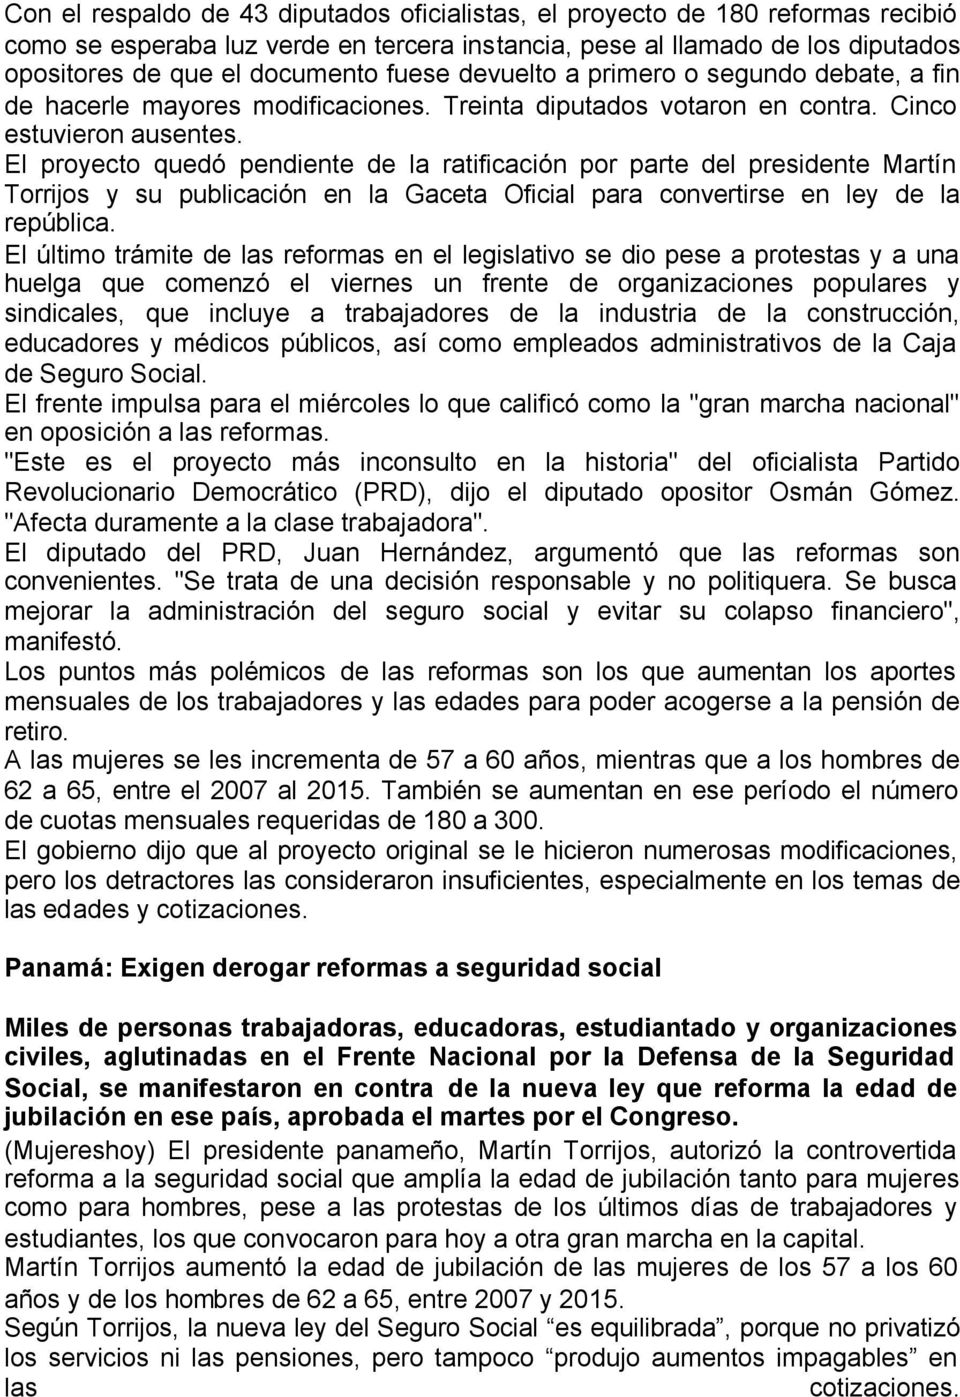 El proyecto quedó pendiente de la ratificación por parte del presidente Martín Torrijos y su publicación en la Gaceta Oficial para convertirse en ley de la república.